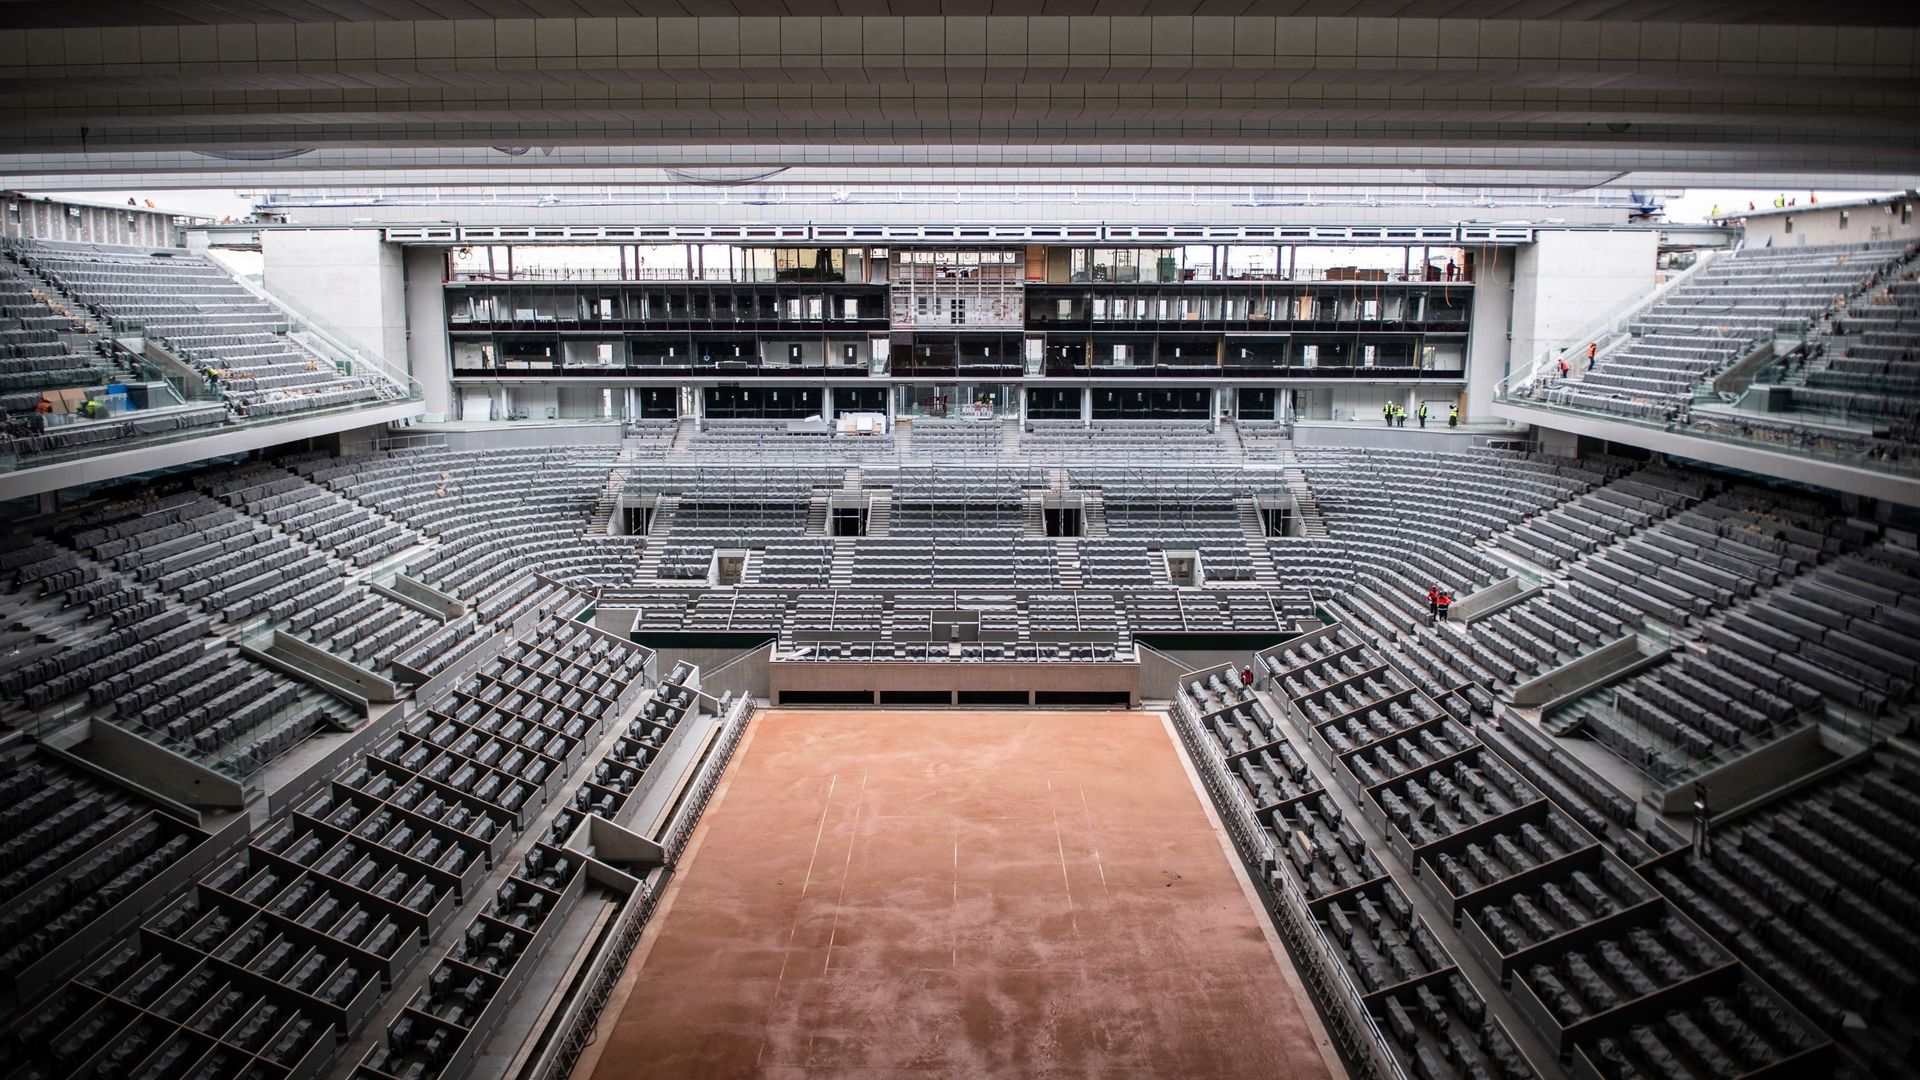 Dalla terra battuta al parquet: la splendida trasformazione del campo centrale tre giorni dopo la fine del Roland Garros